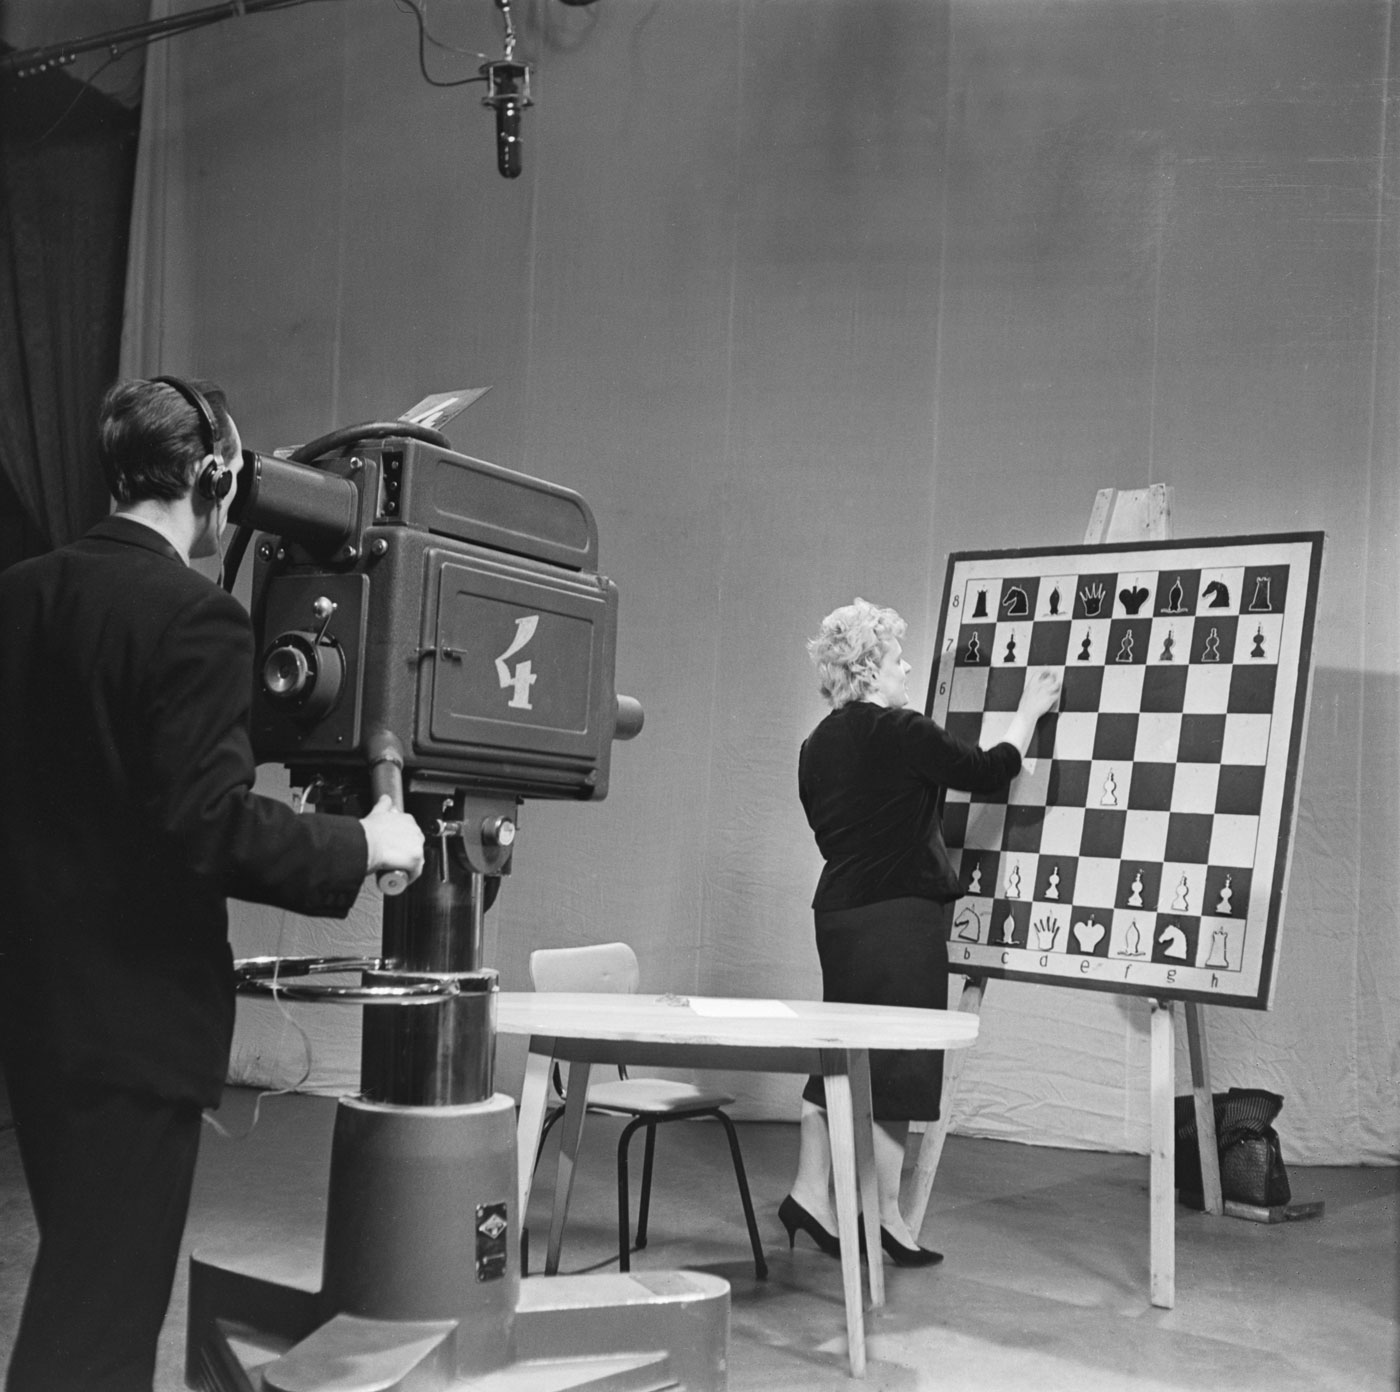 1964. Une femme analyse un jeu d’échecs pendant un jeu télévisé.